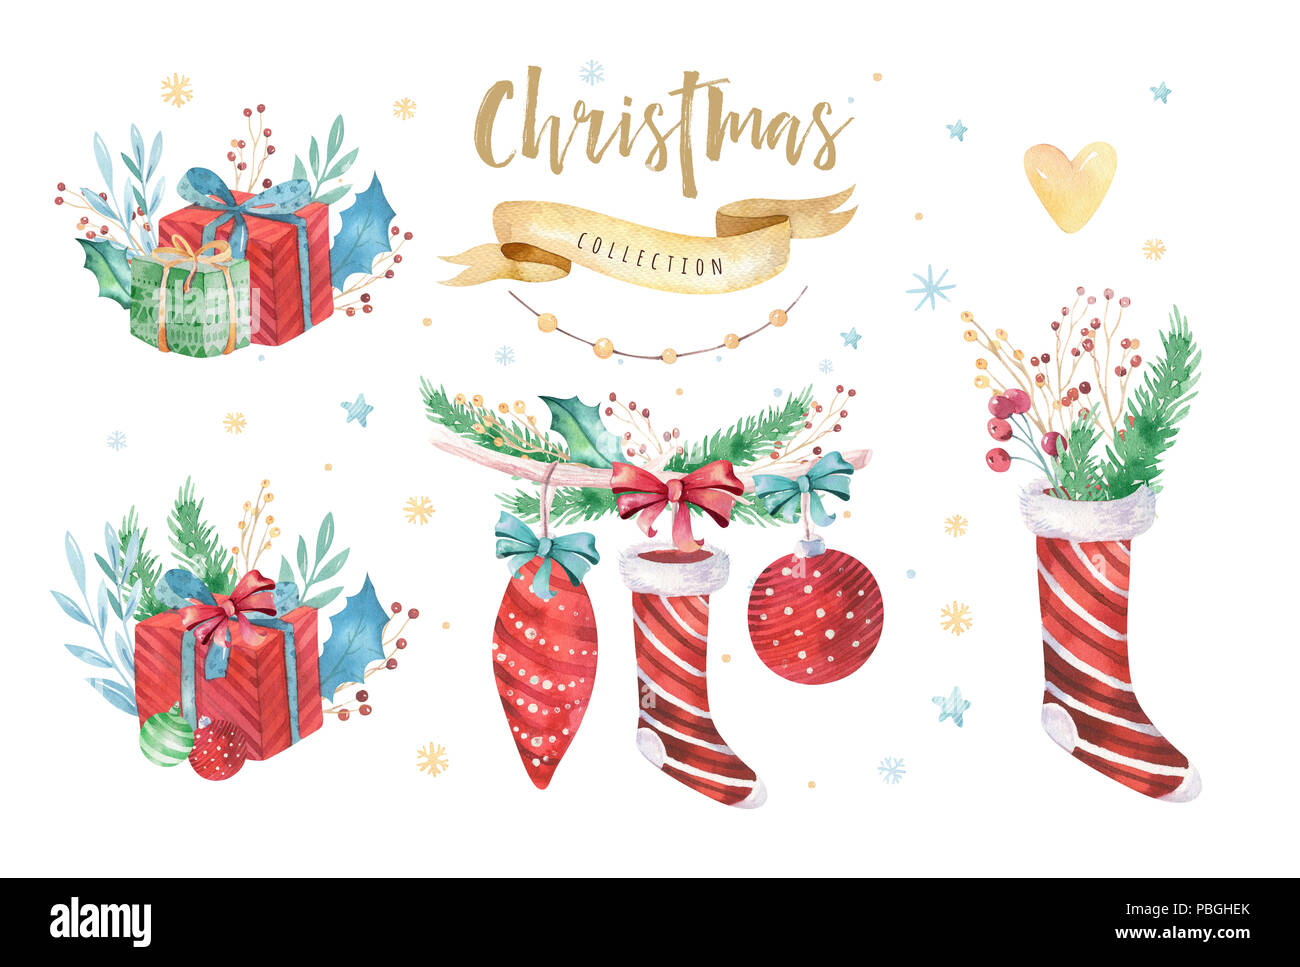 Feliz Navidad y Próspero Año Nuevo 2019 decoración juego de invierno. Acuarela fondo de vacaciones. Elemento de Navidad. Foto de stock